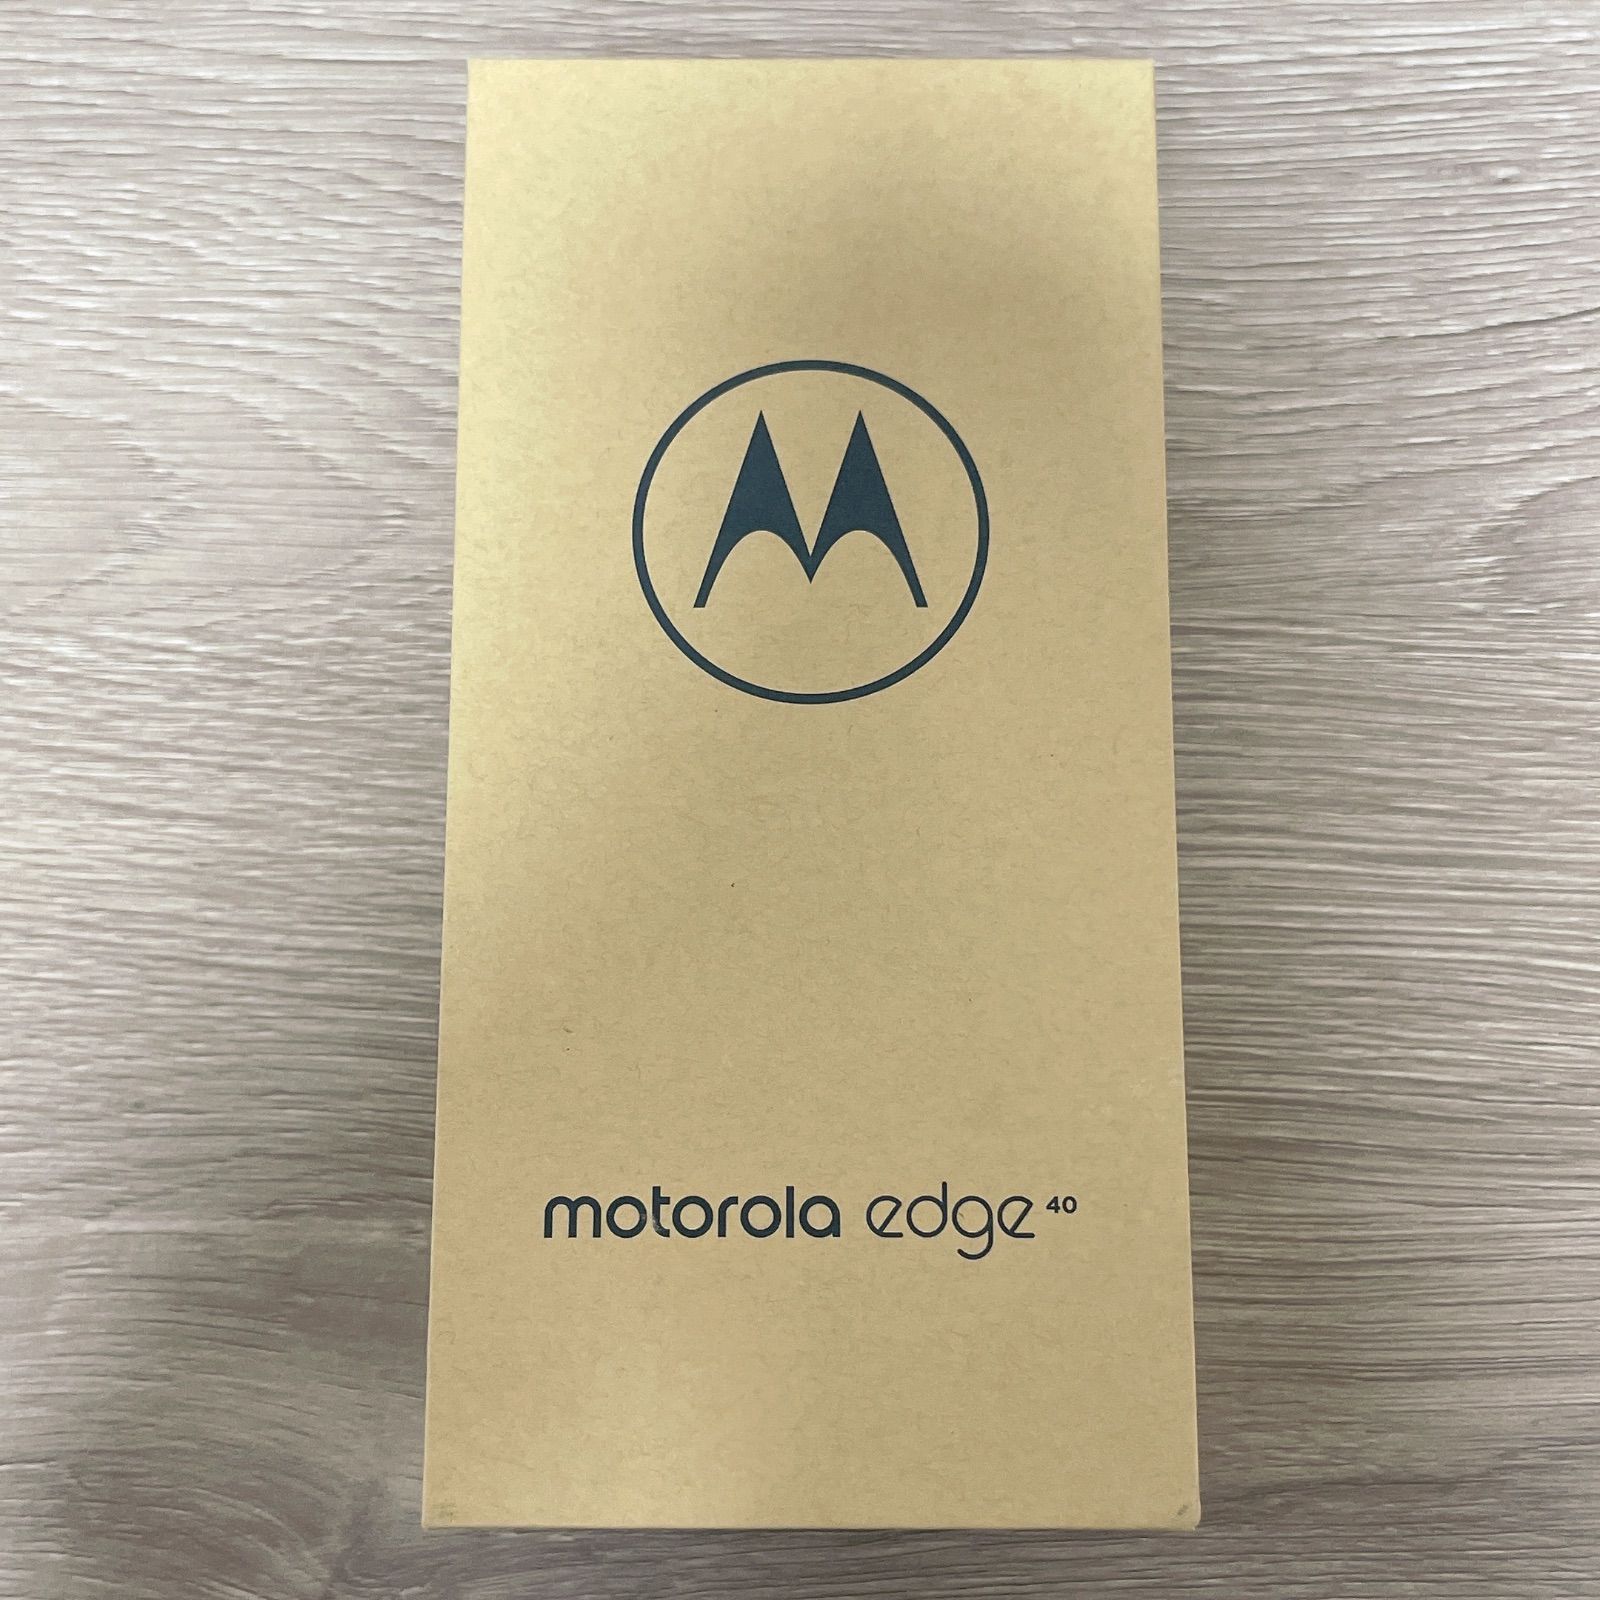 motorola未開封新品「Motorola edge40」ルナブルー - スマートフォン本体